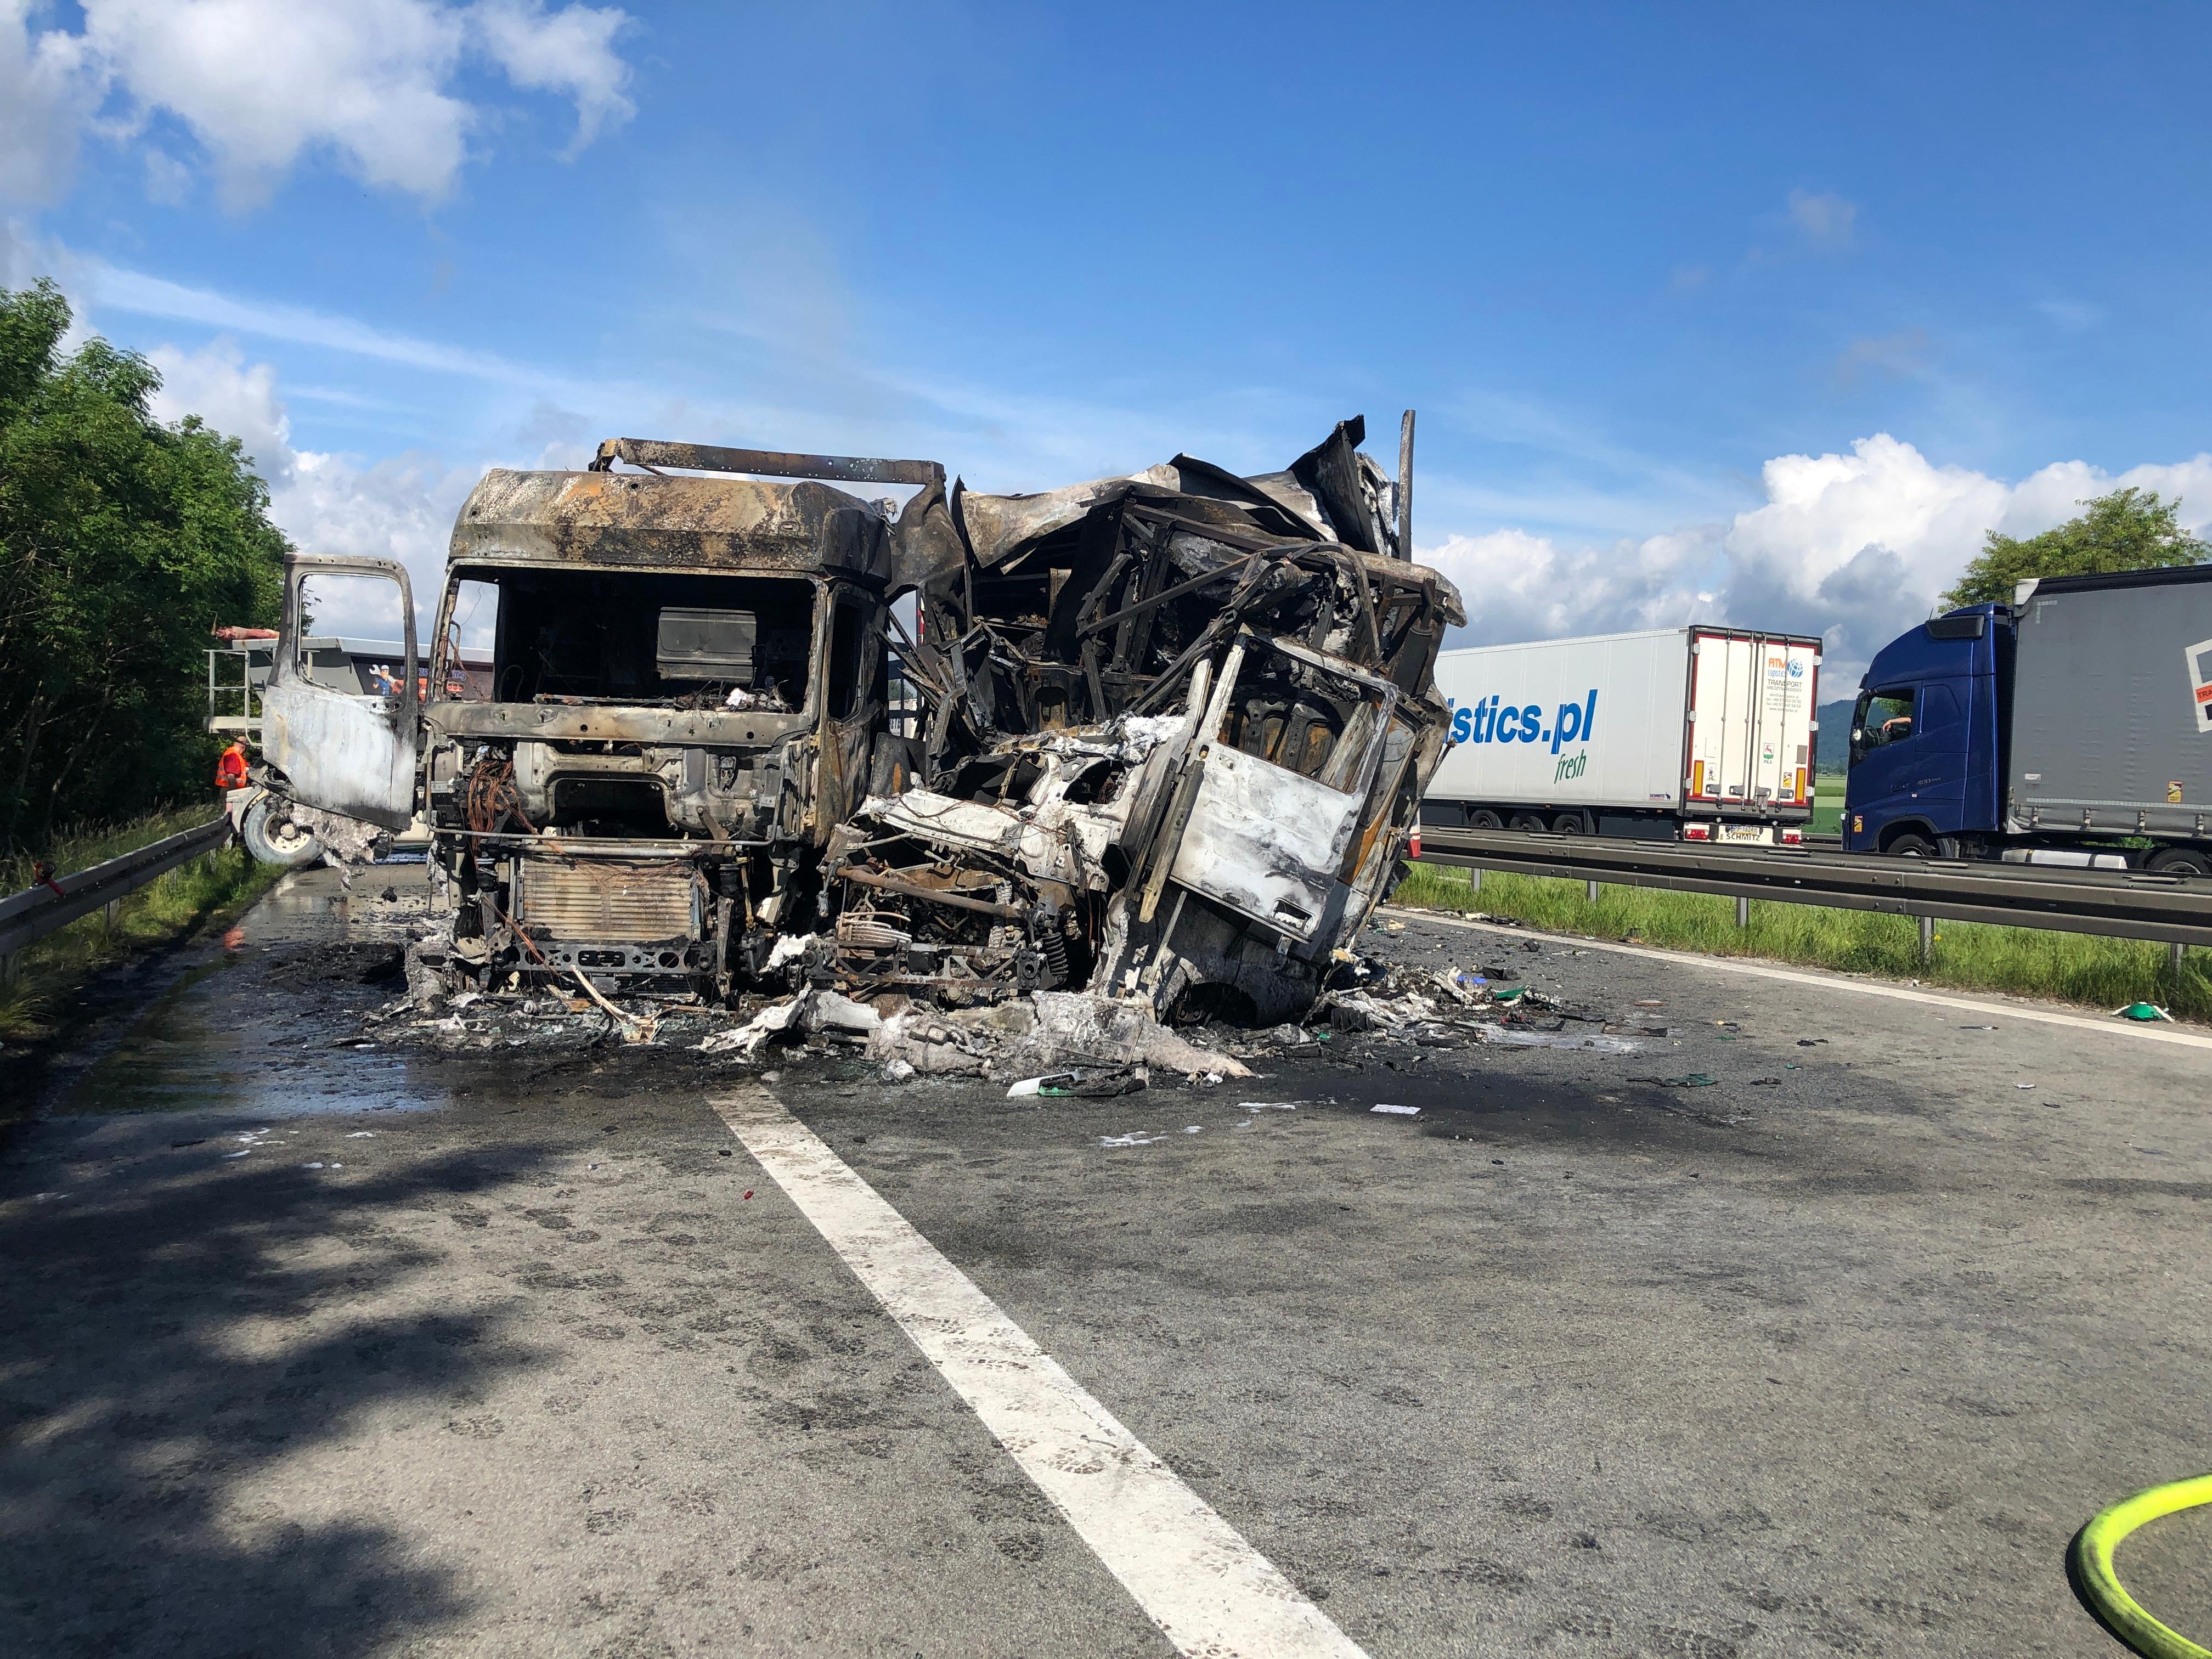 Σοβαρό δυστύχημα με πολλά φορτηγά στην A3 κοντά στο Ρέγκενσμπουργκ